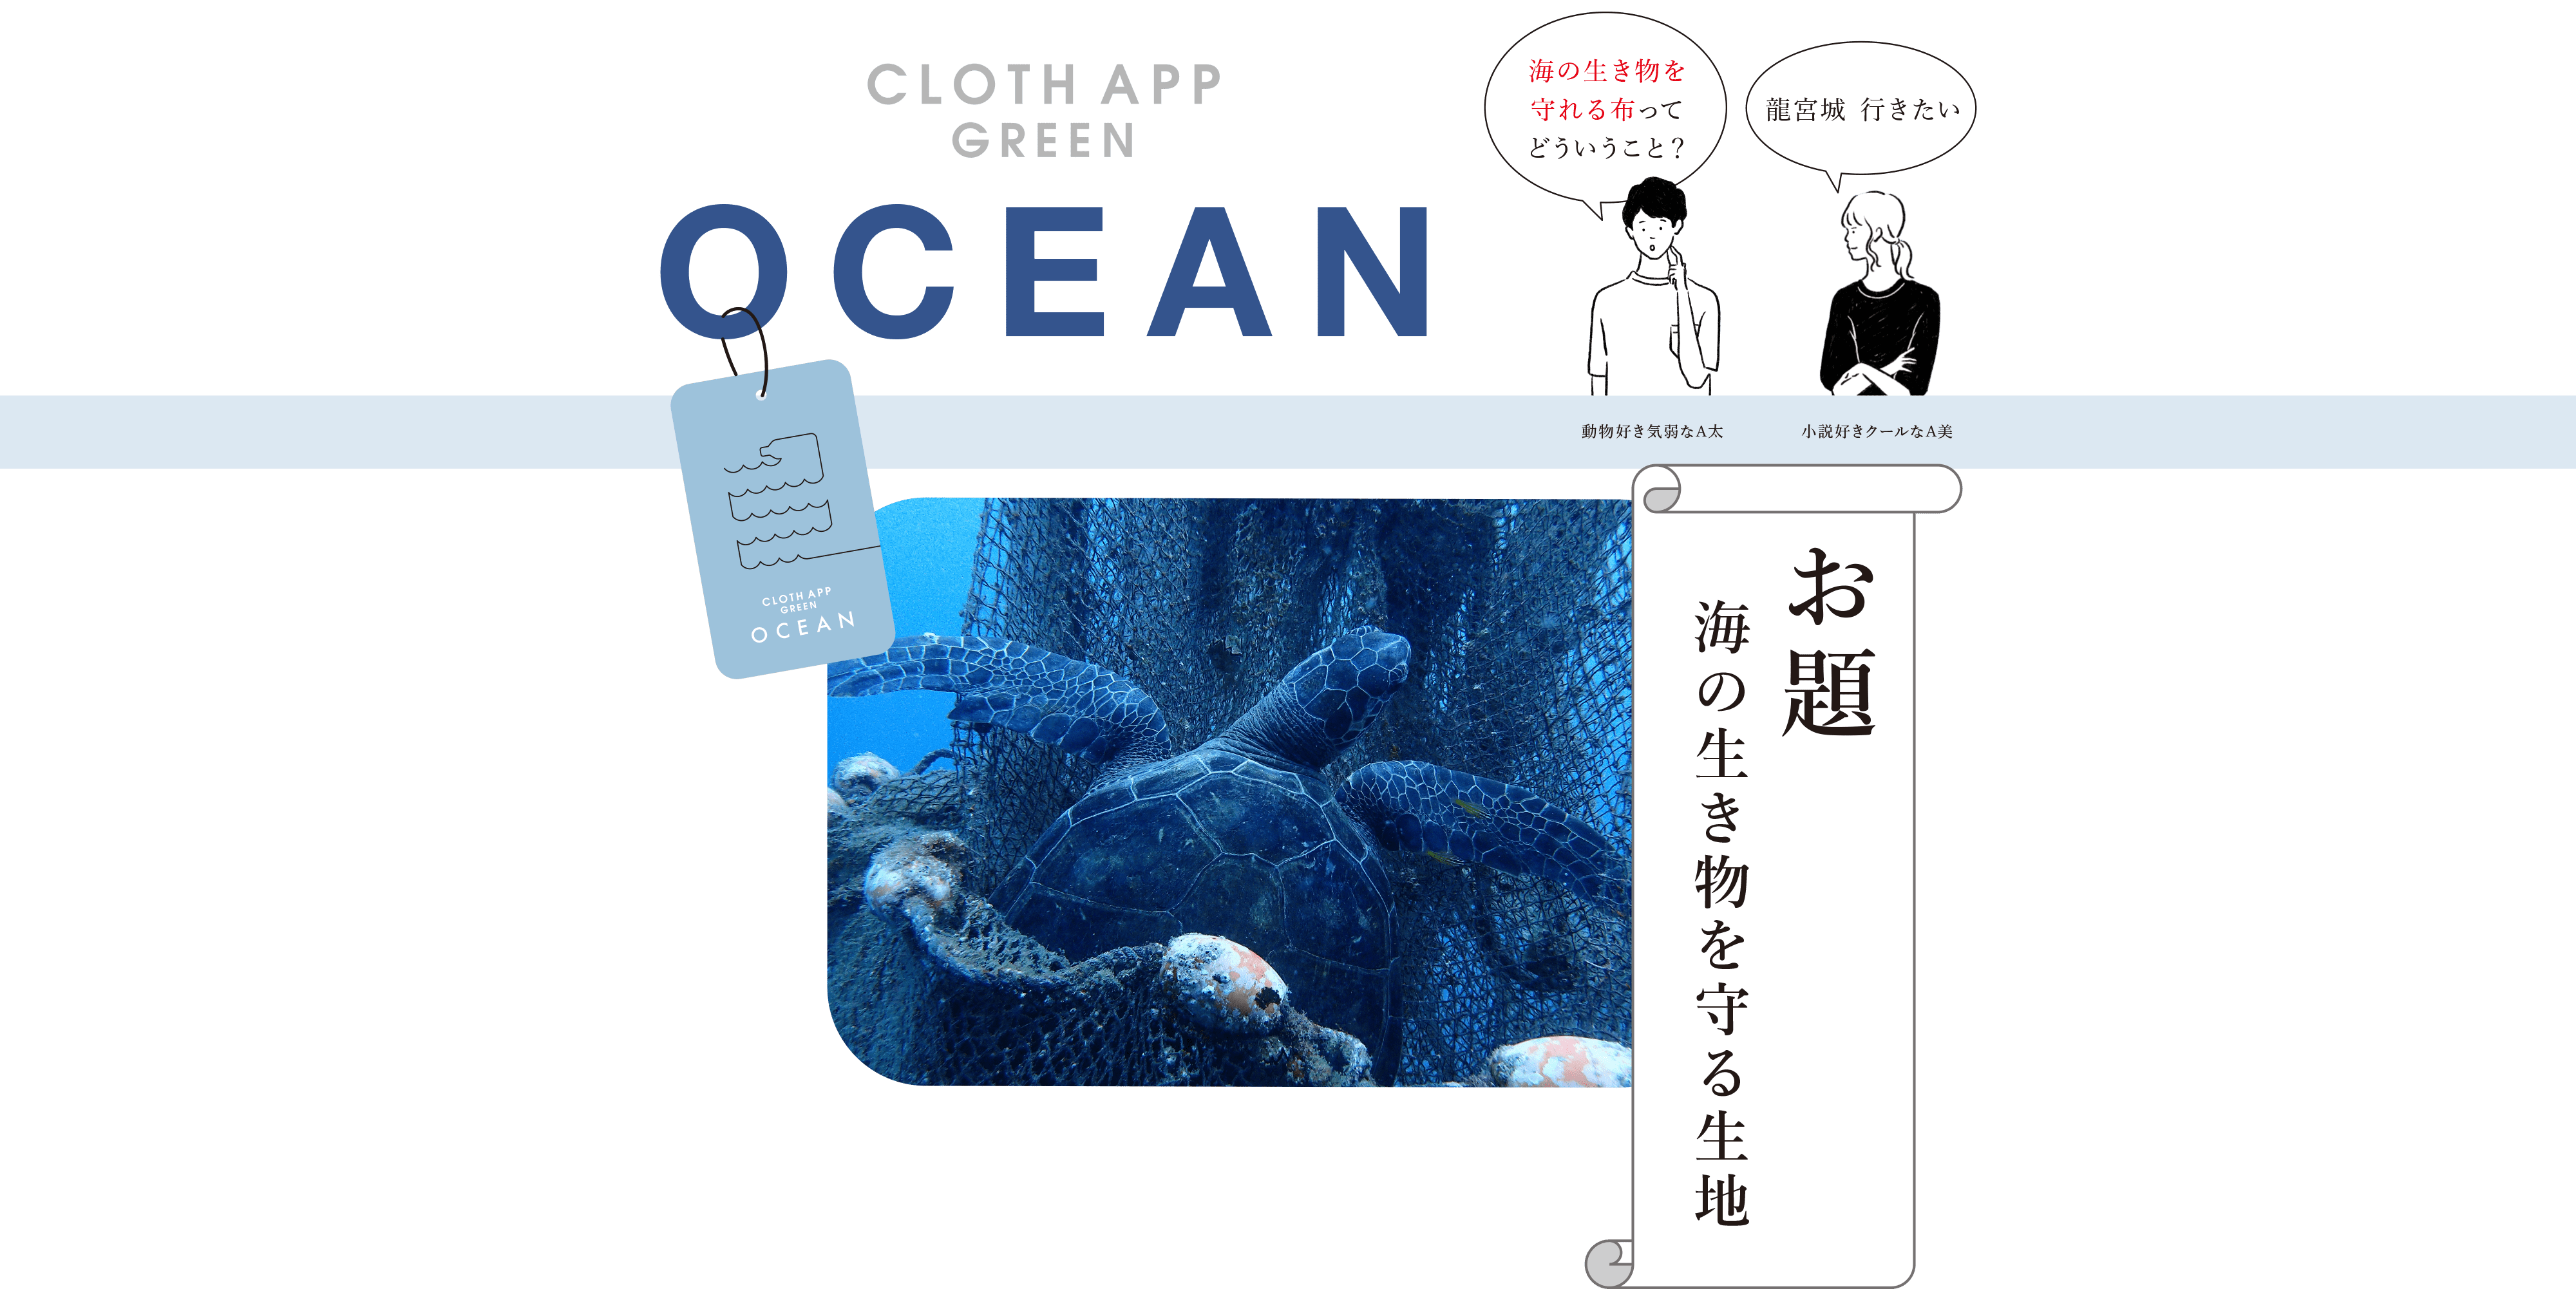 海の生き物を守る生地 Cloth App